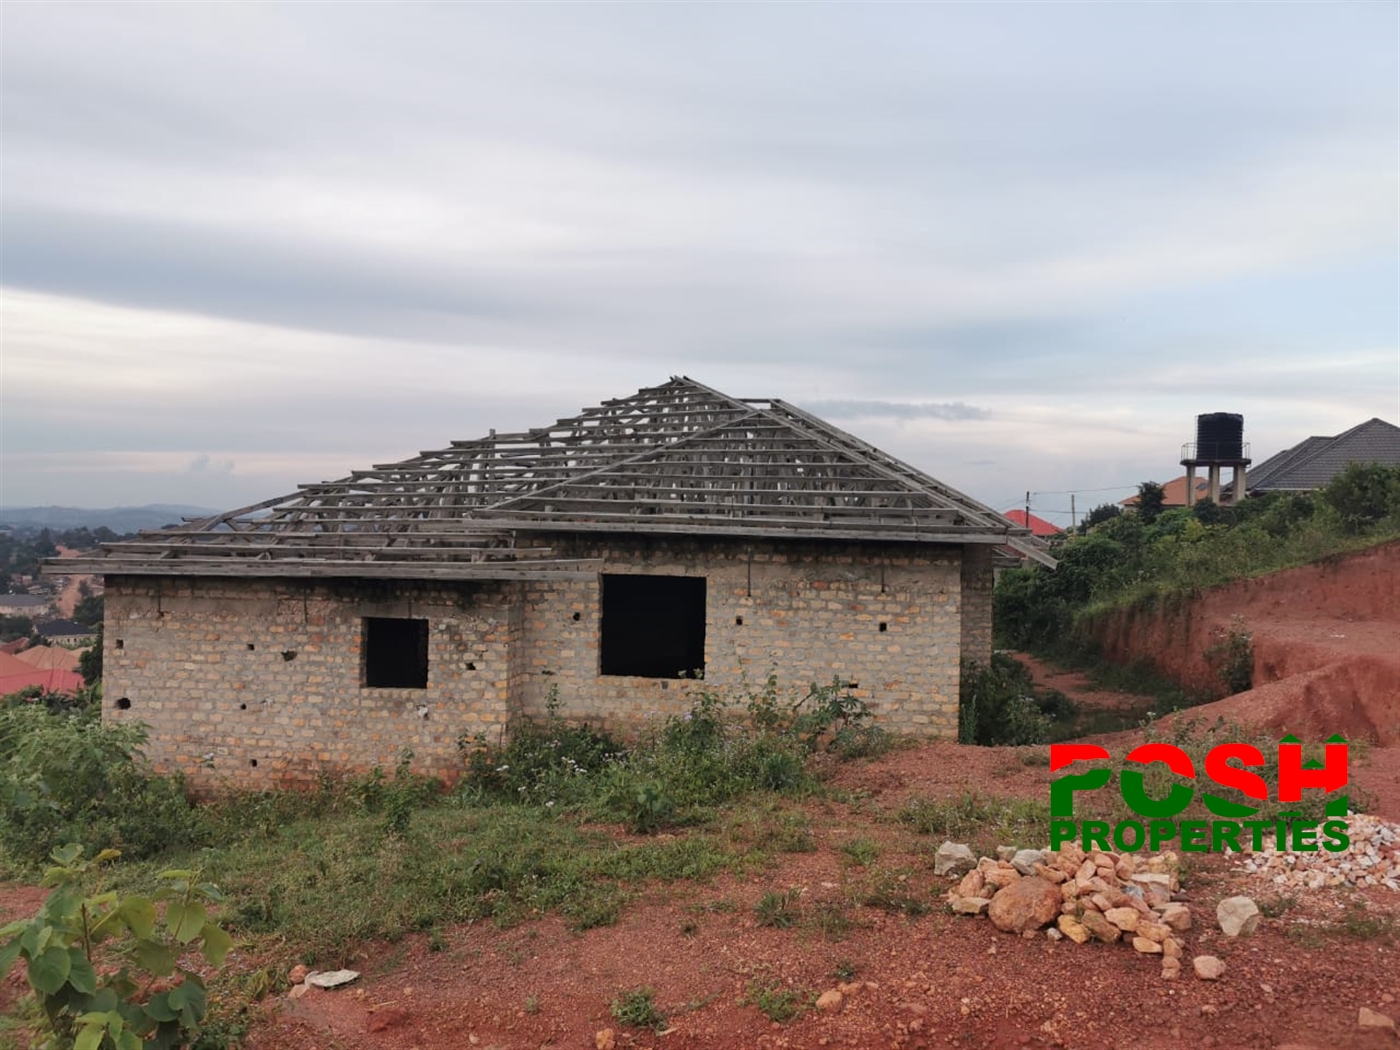 Shell House for sale in Nansana Wakiso